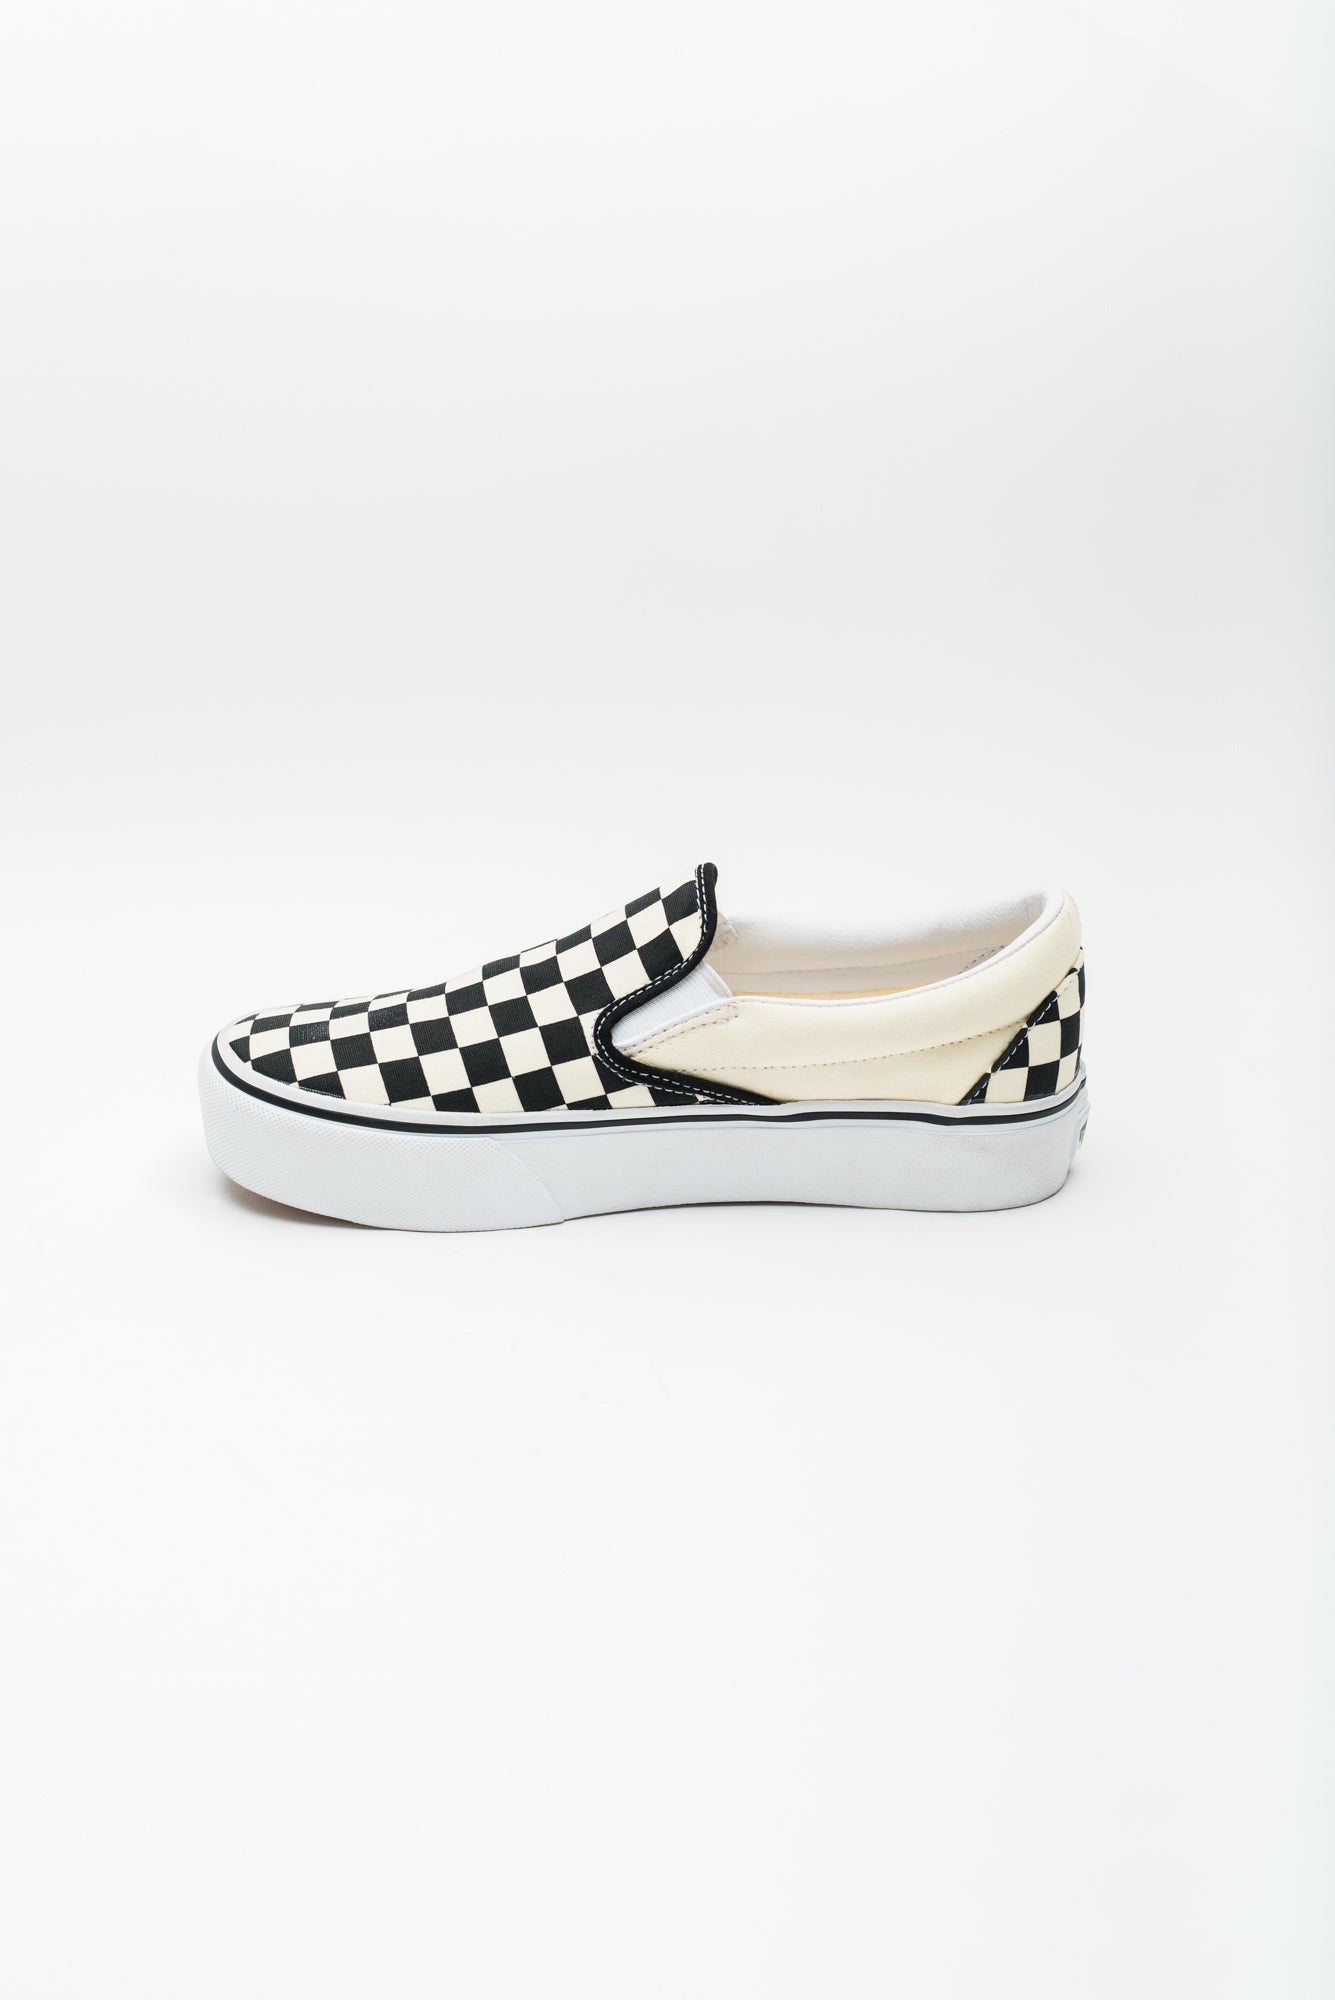 Vans Women's Classic Slip-On Platform Sneaker - Black/White Checkerboard